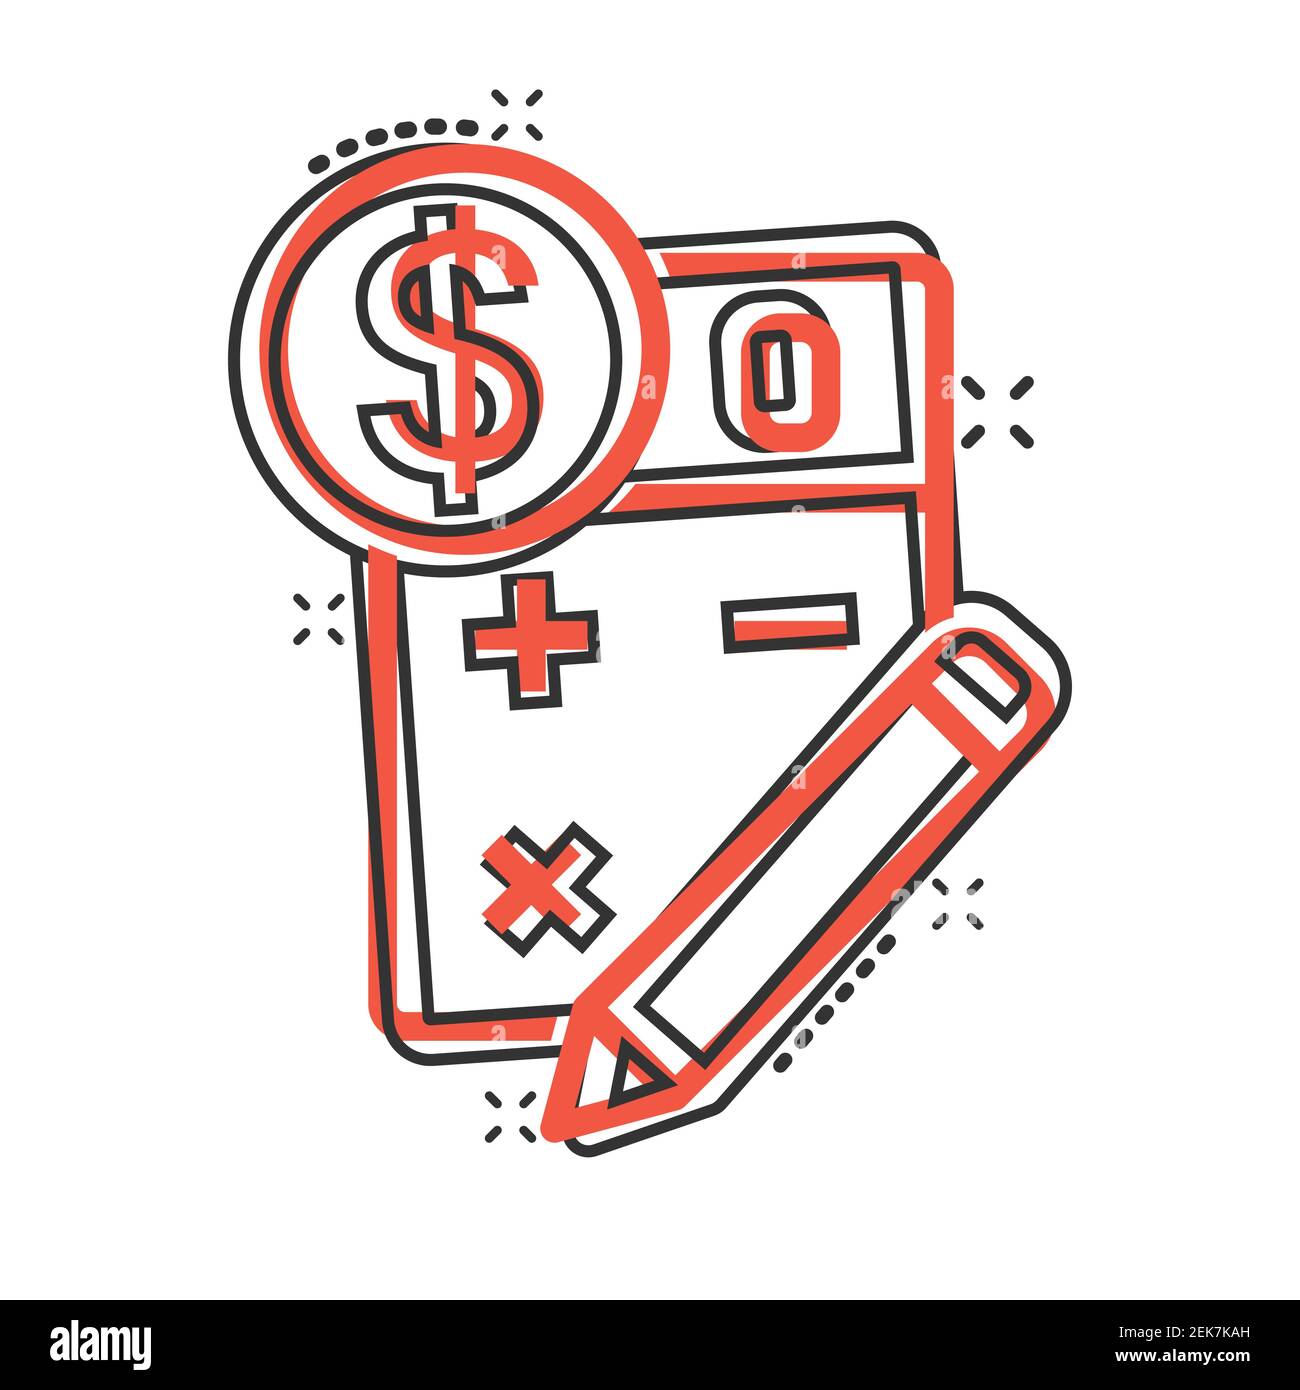 Steuerzahlung Symbol im Comic-Stil. Budget Rechnung Cartoon Vektor Illustration auf weißem Hintergrund isoliert. Rechner mit Dollar-Münze und Bleistiftsplaß Stock Vektor